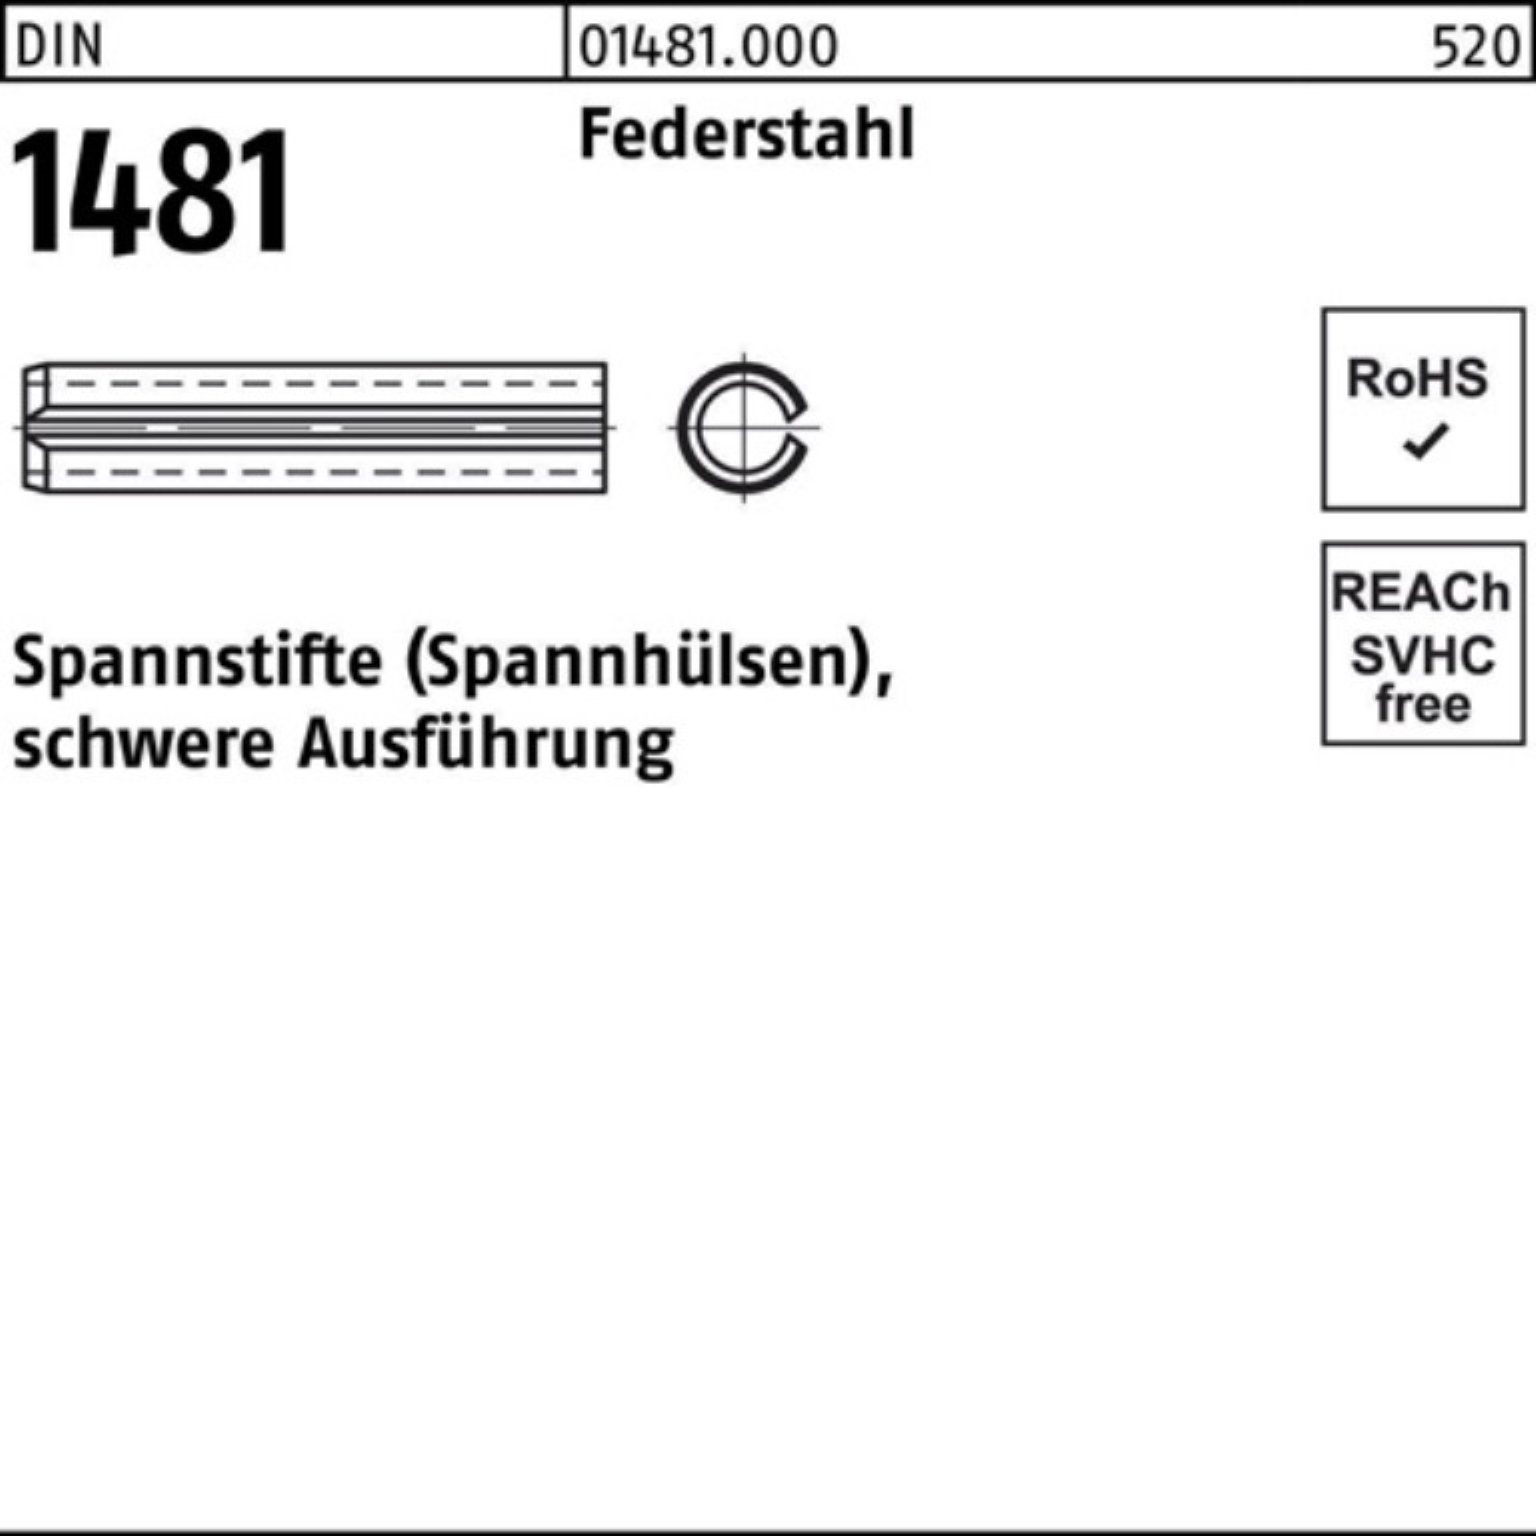 Reyher Spannstift 200er Pack Spannstift 18 schwere Ausführung 1481 Federstahl 20 DIN 3x